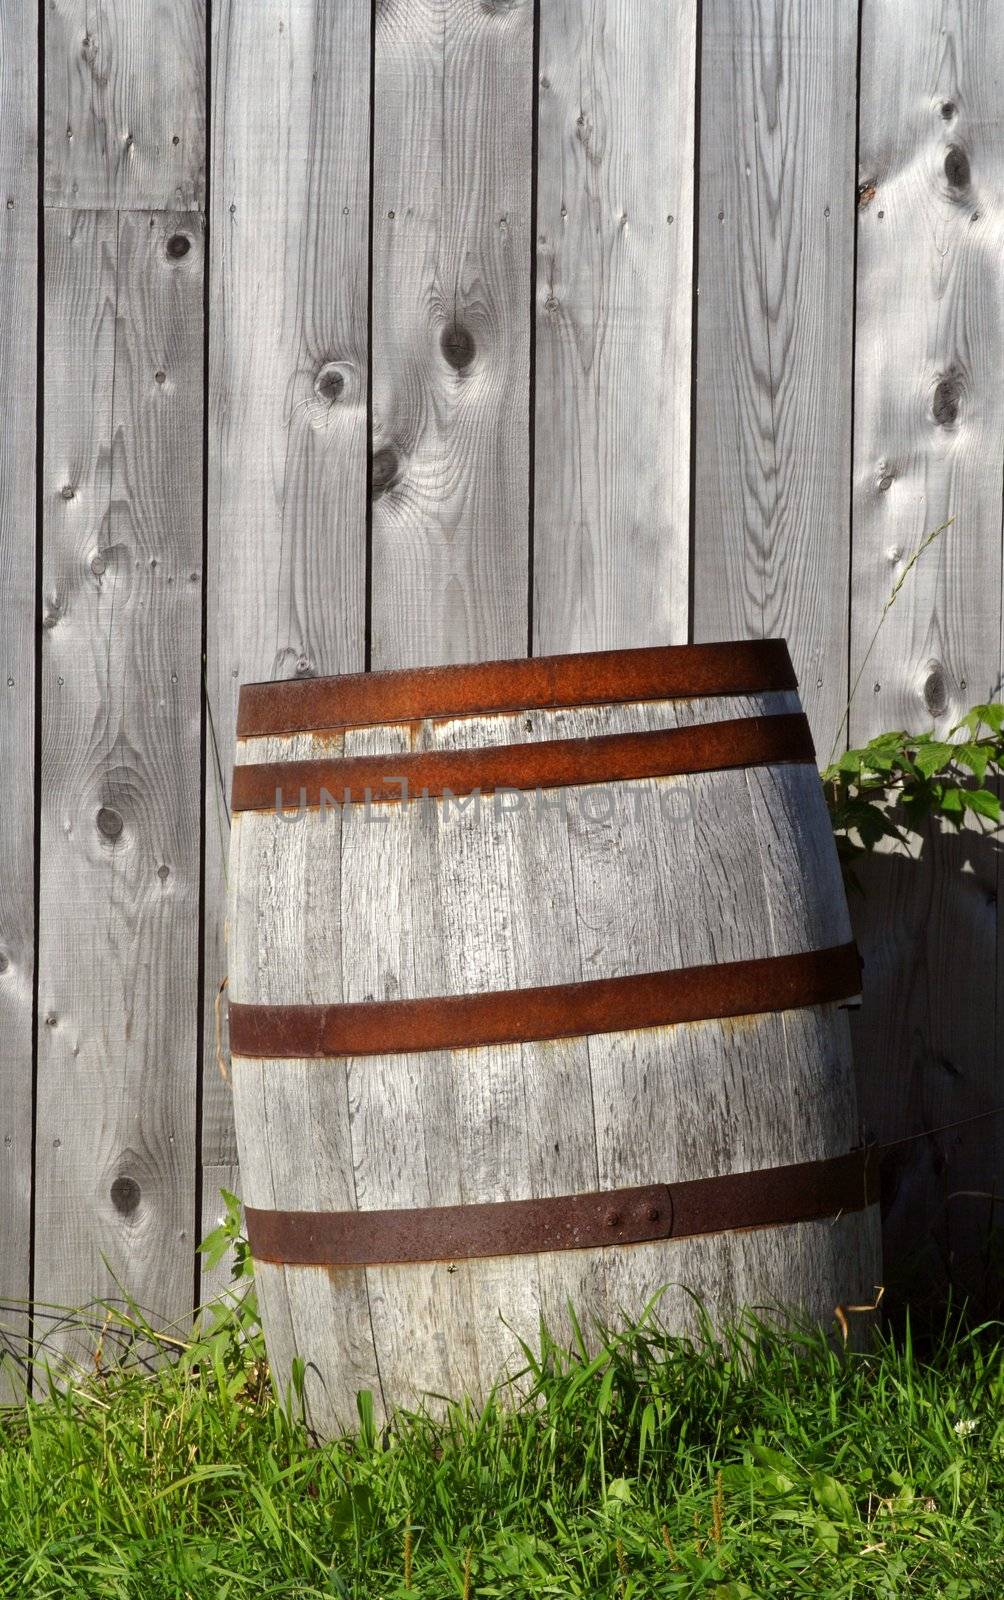 barrel on grass near a wood wall